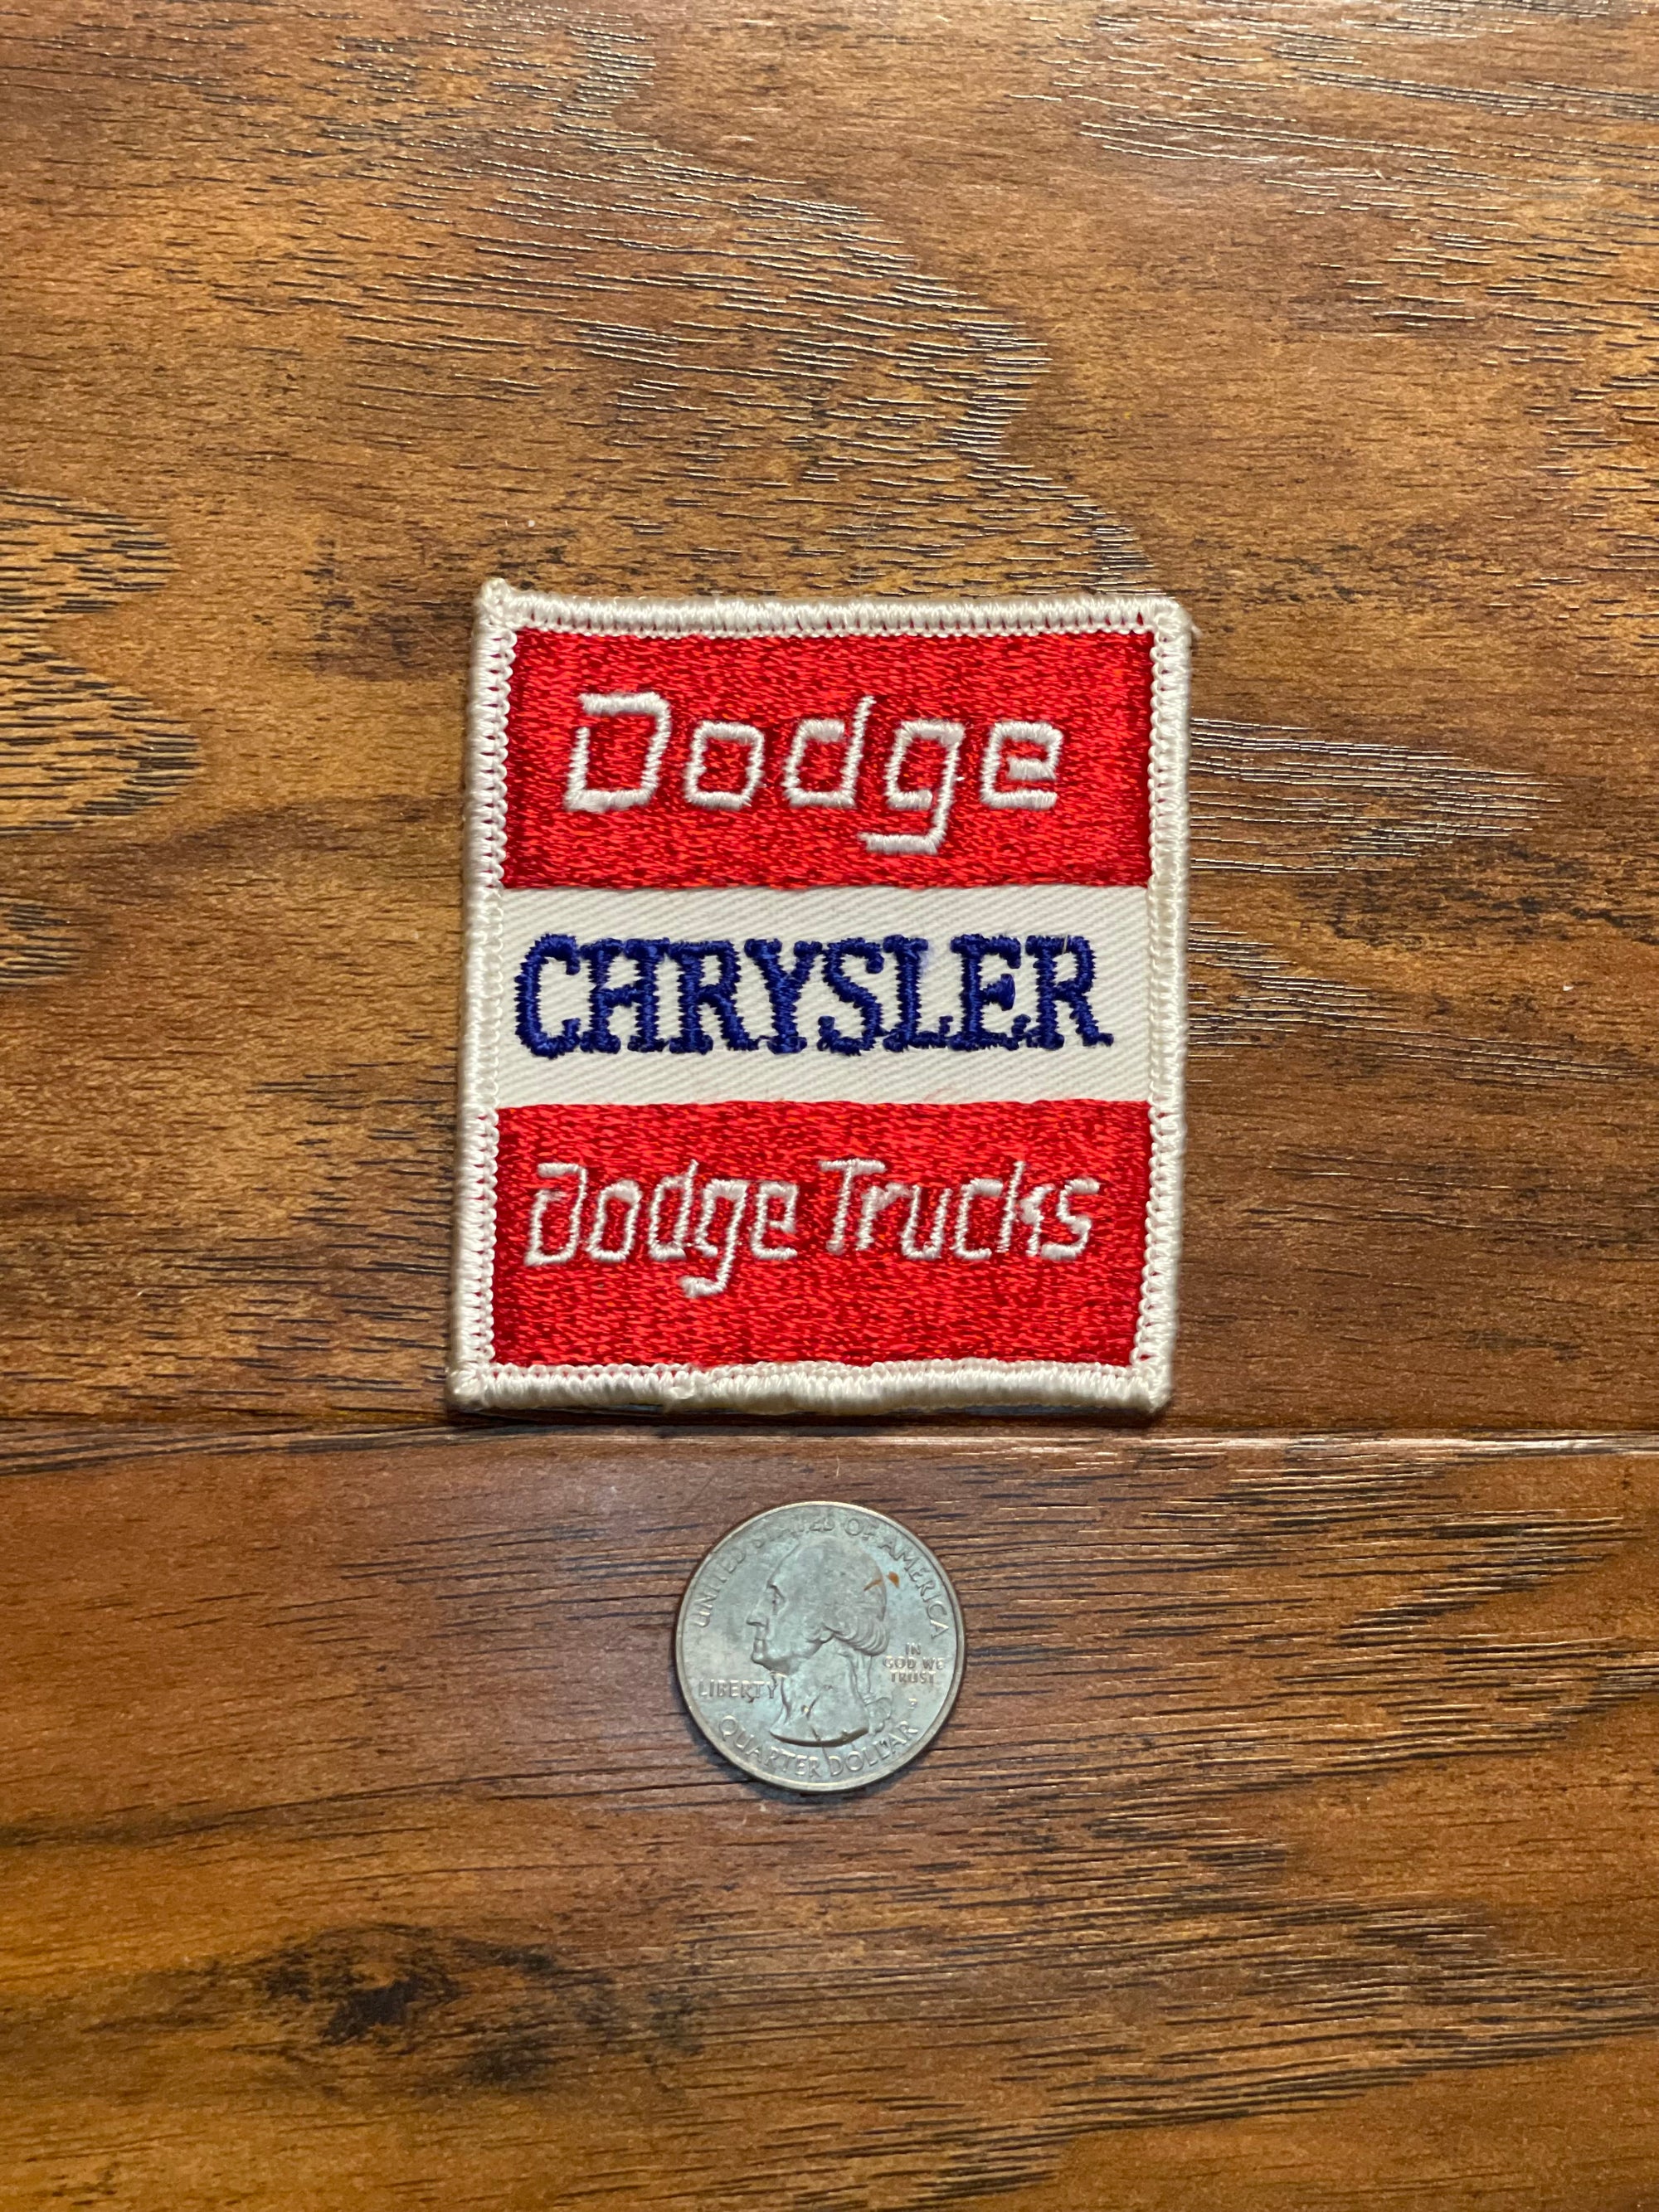 Vintage Dodge Chrysler Dodge Trucks